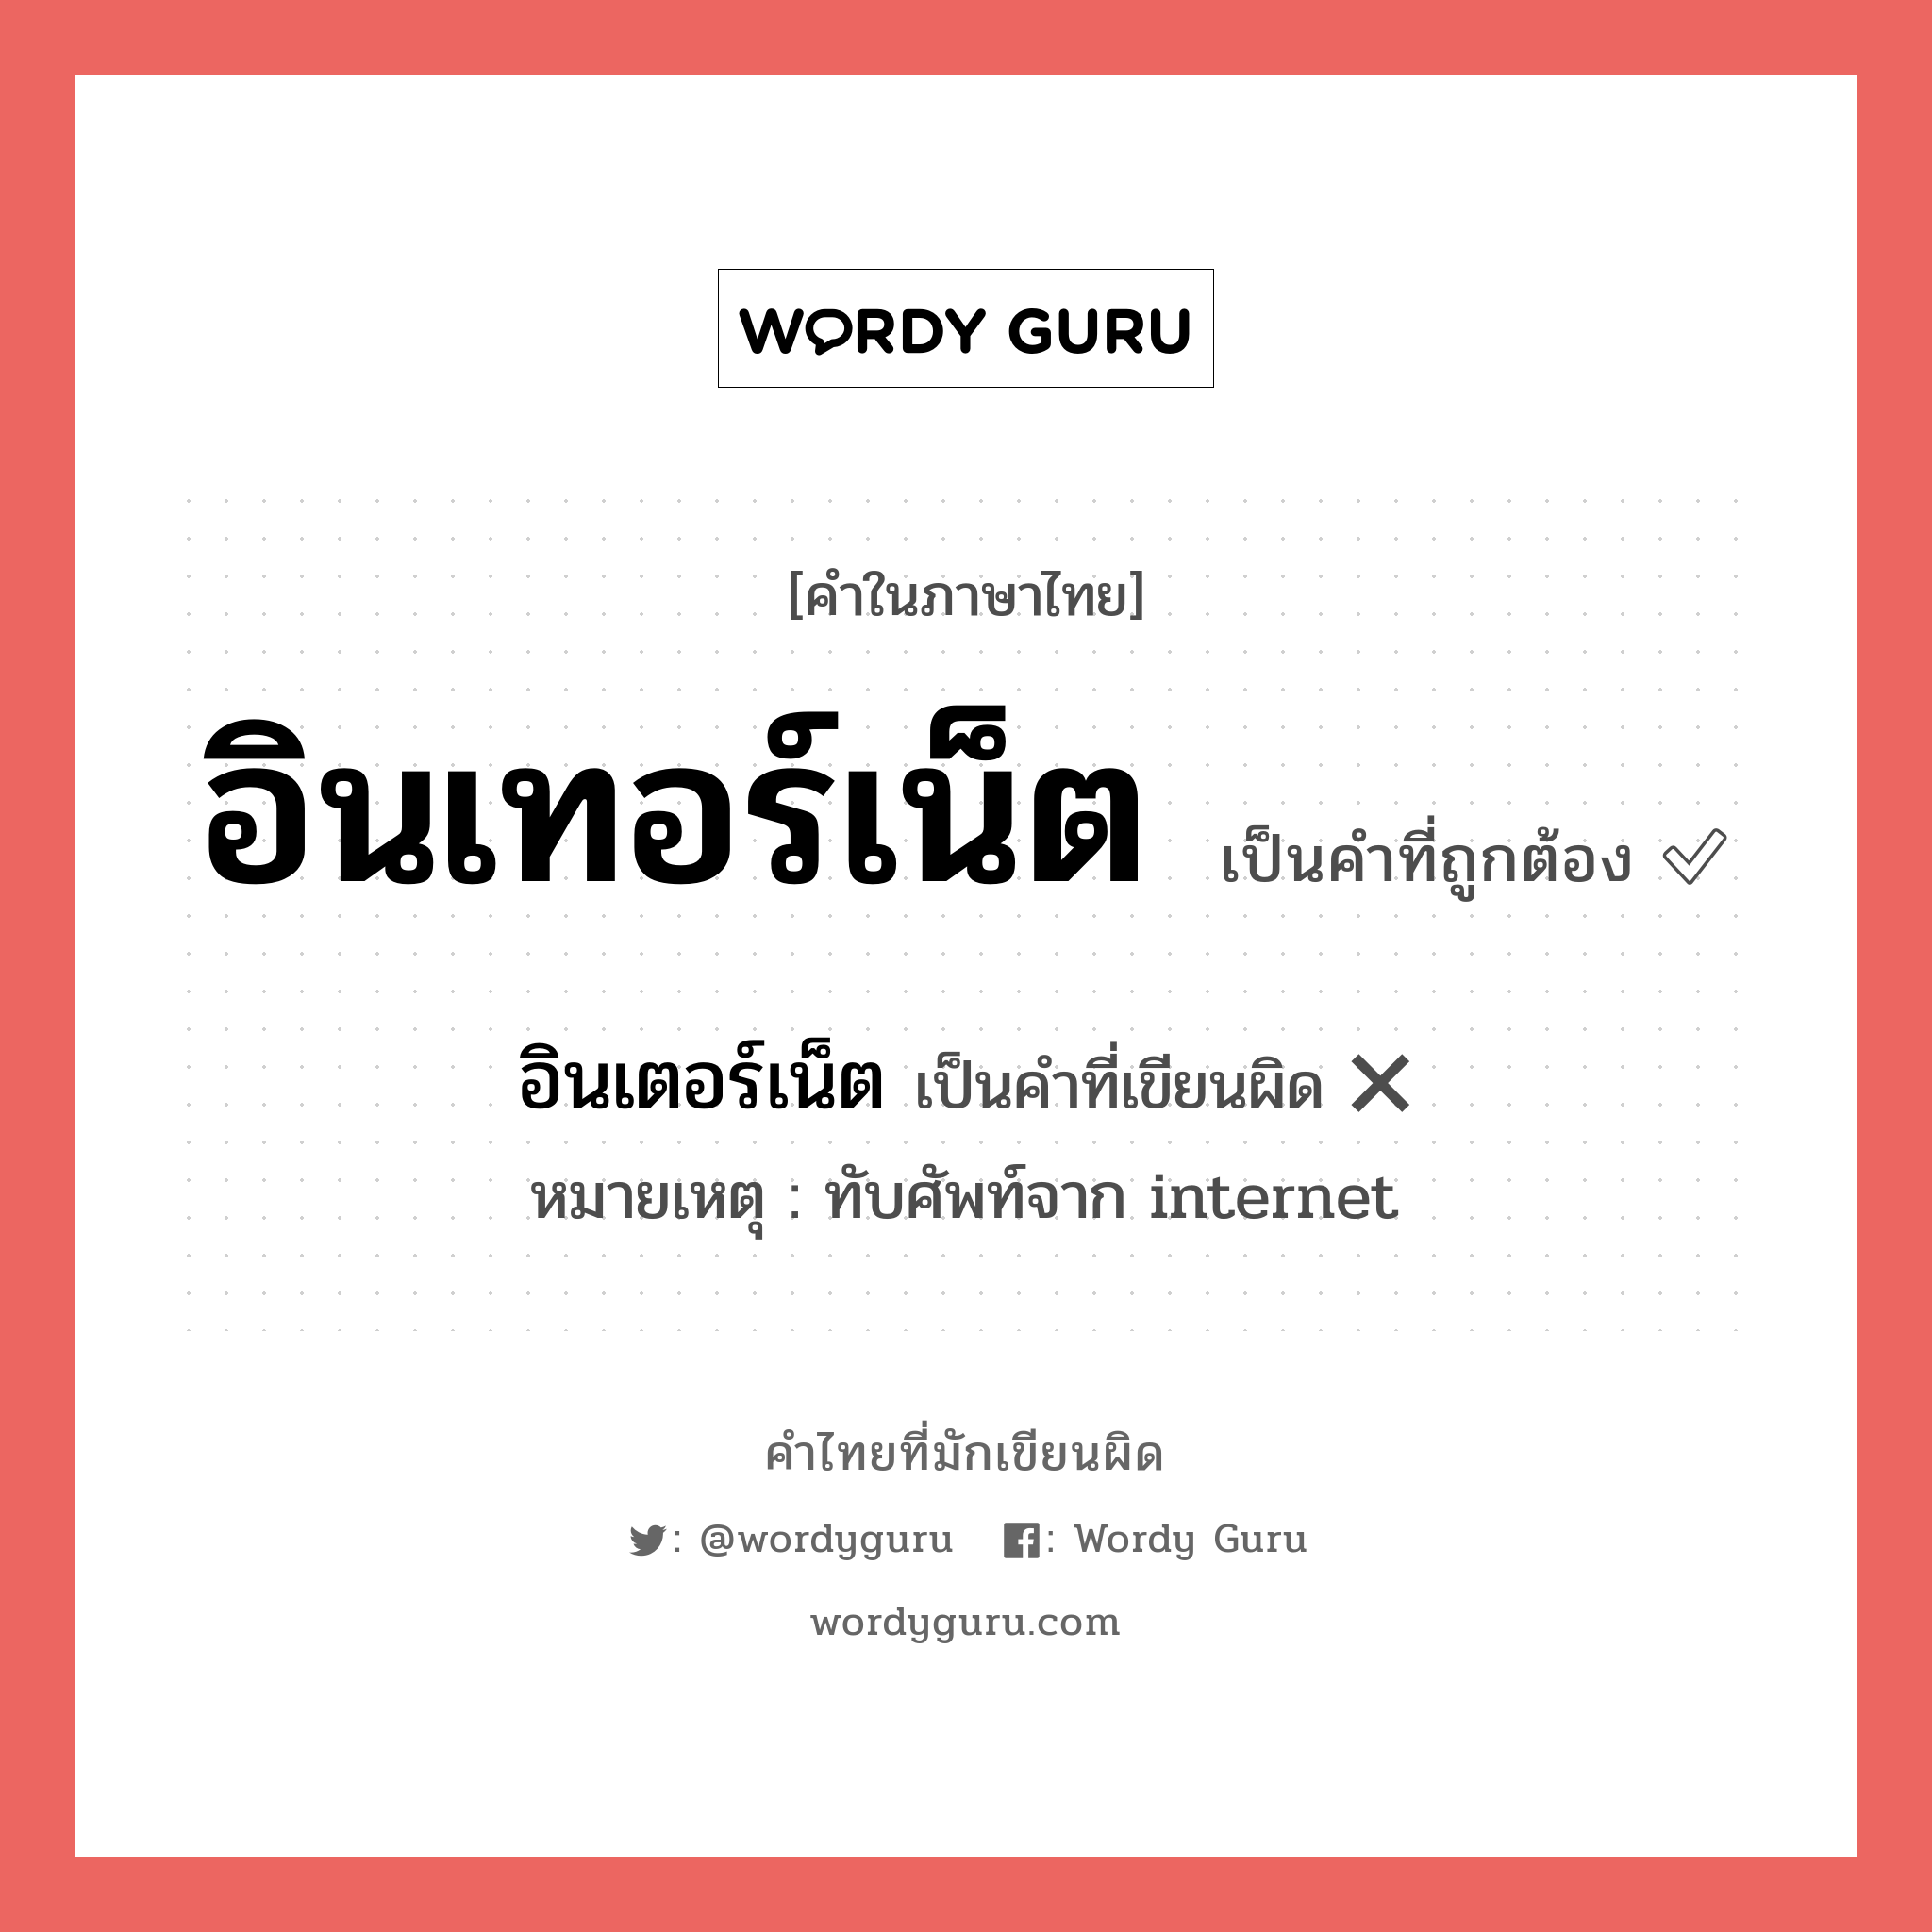 อินเทอร์เน็ต หรือ อินเตอร์เน็ต คำไหนเขียนถูก?, คำในภาษาไทยที่มักเขียนผิด อินเทอร์เน็ต คำที่ผิด ❌ อินเตอร์เน็ต หมายเหตุ ทับศัพท์จาก internet